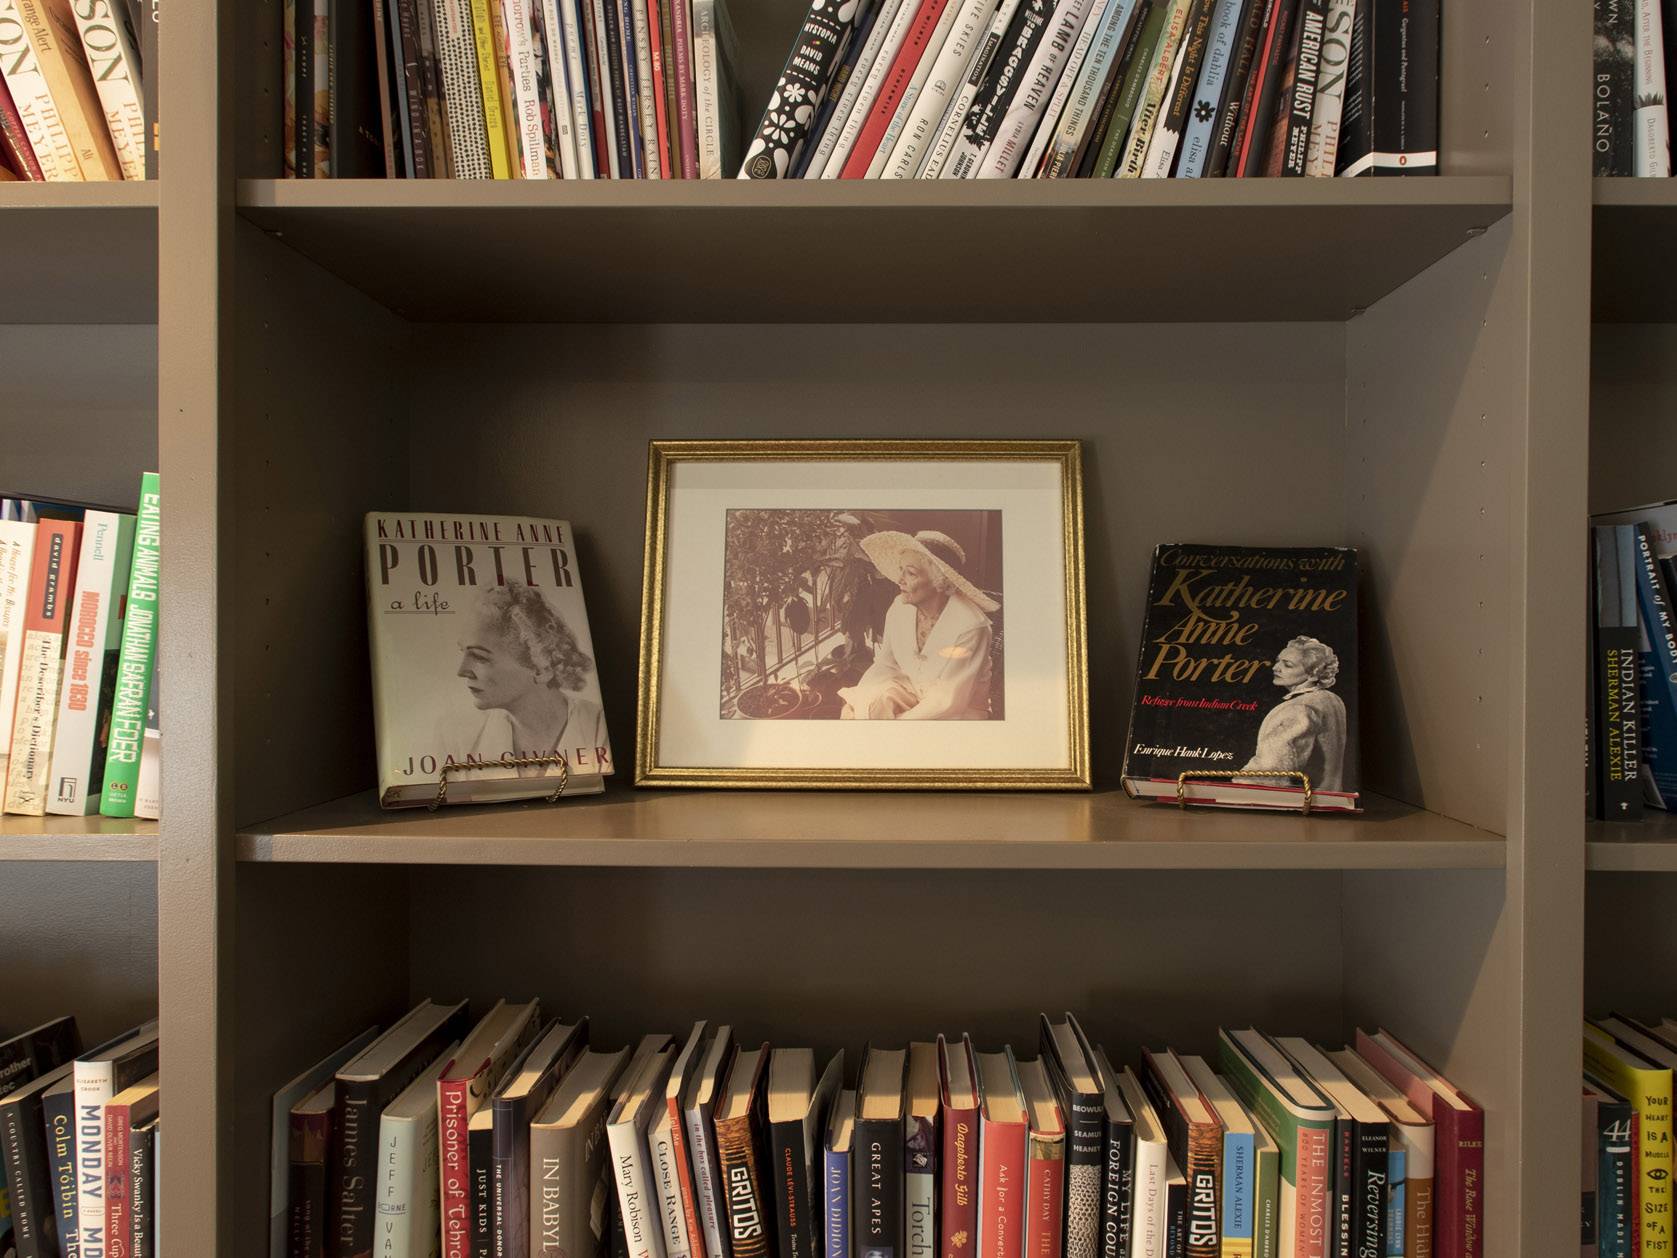 frame of katherine anne porter on bookshelf